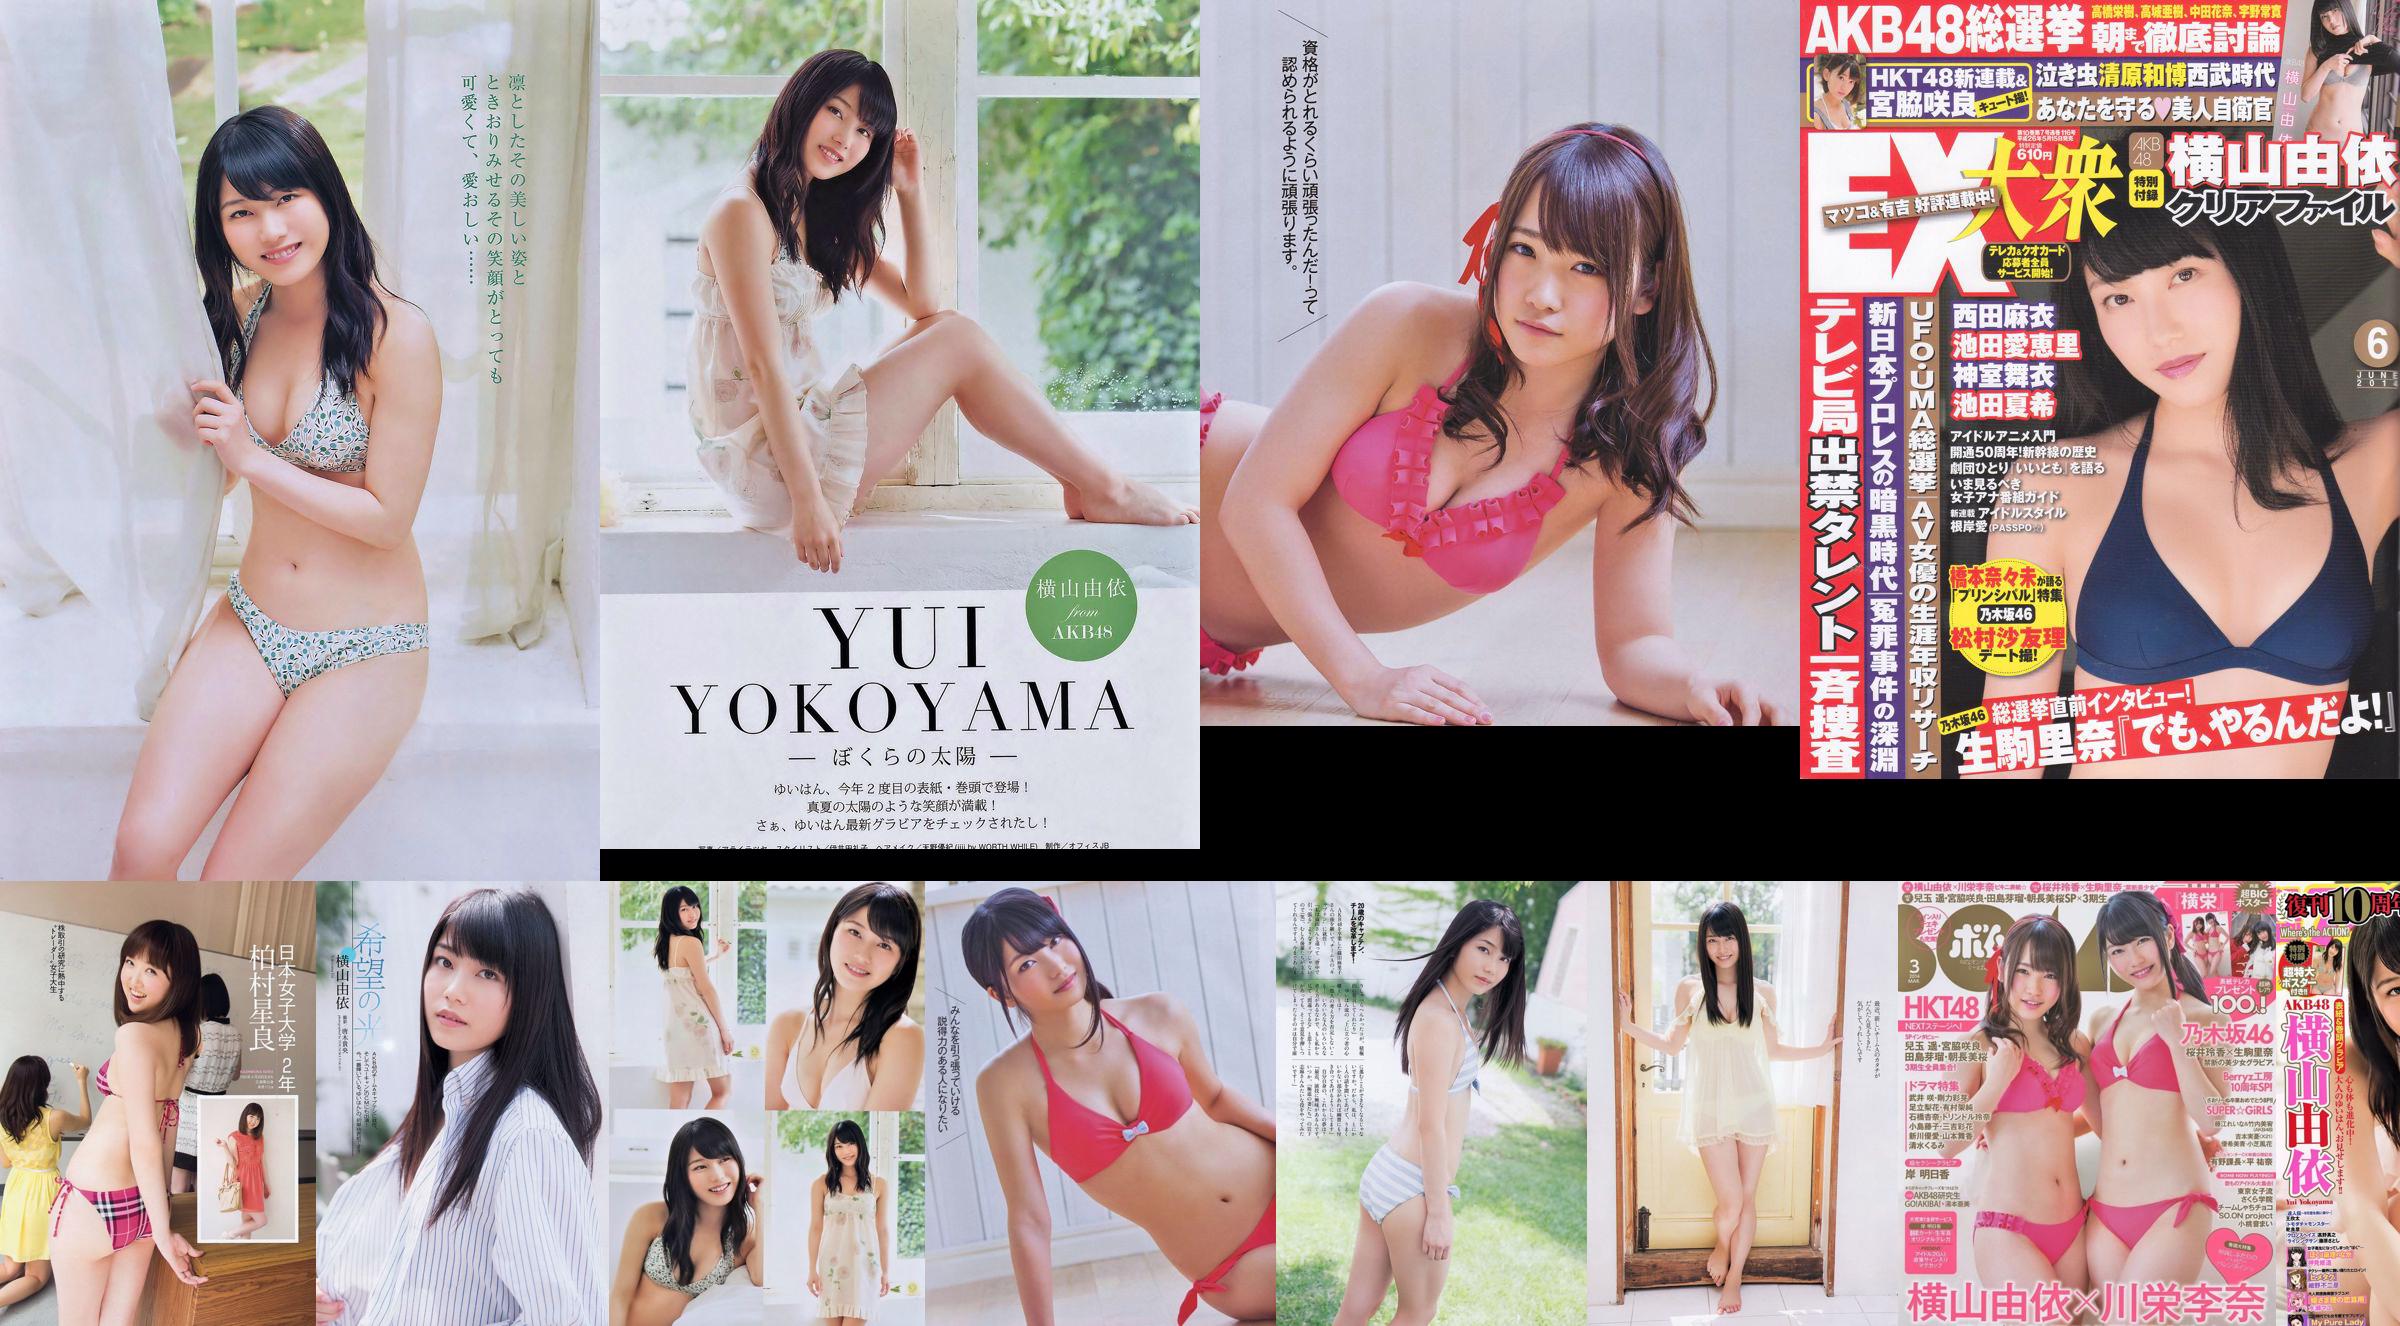 [Bomb Magazine] 2014 No.03 Fotografia di Yui Yokoyama Rina Kawaei No.d018a6 Pagina 5